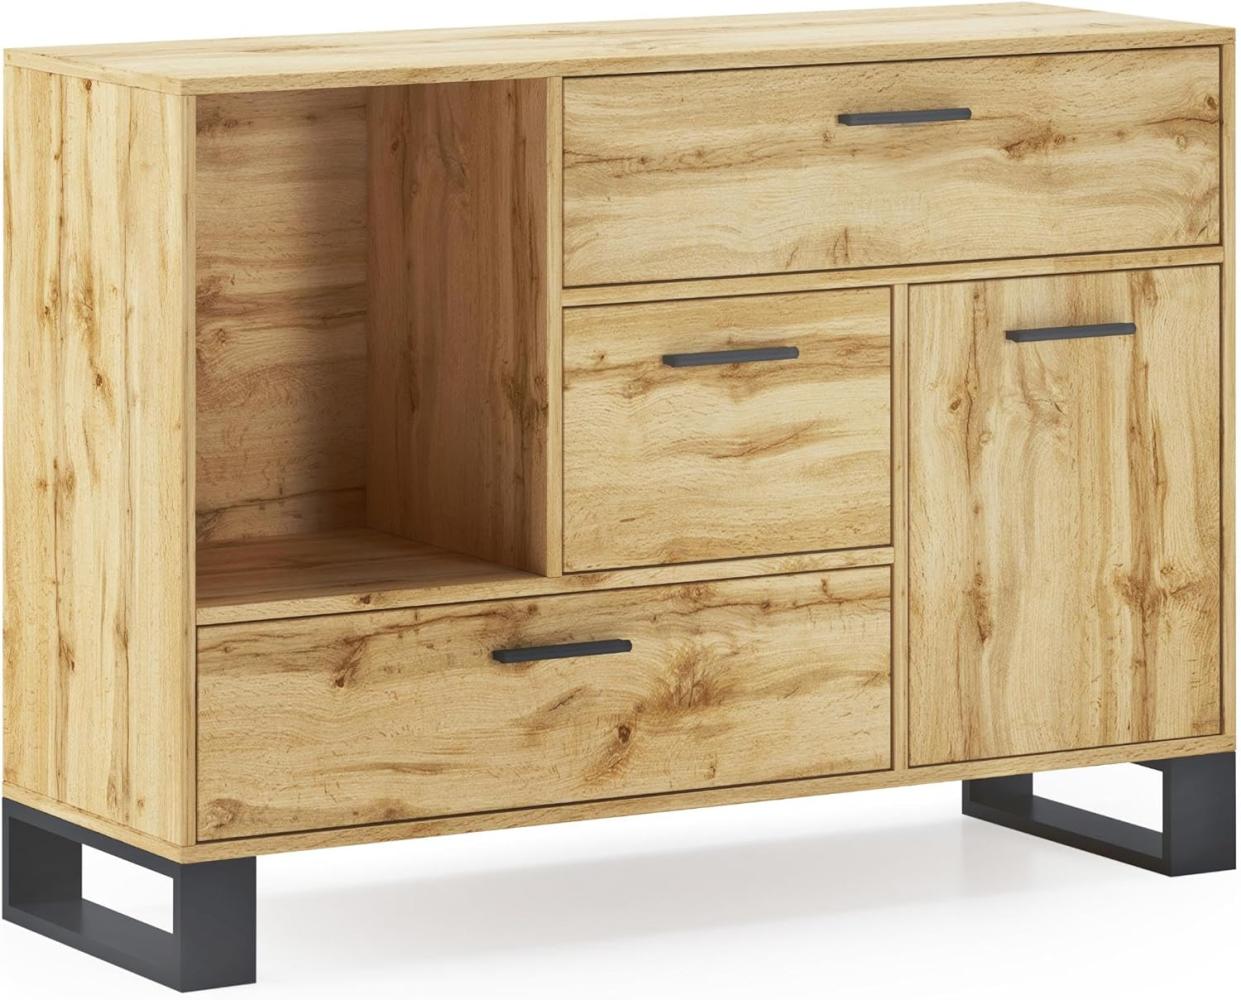 Skraut Home – Sideboard für Wohn- oder Esszimmer – 86 x 120 x 40 cm – Buffet mit 1 Tür + 3 Schubladen – Loft-Modell – widerstandsfähiges Holz – Eichen-Finish Bild 1